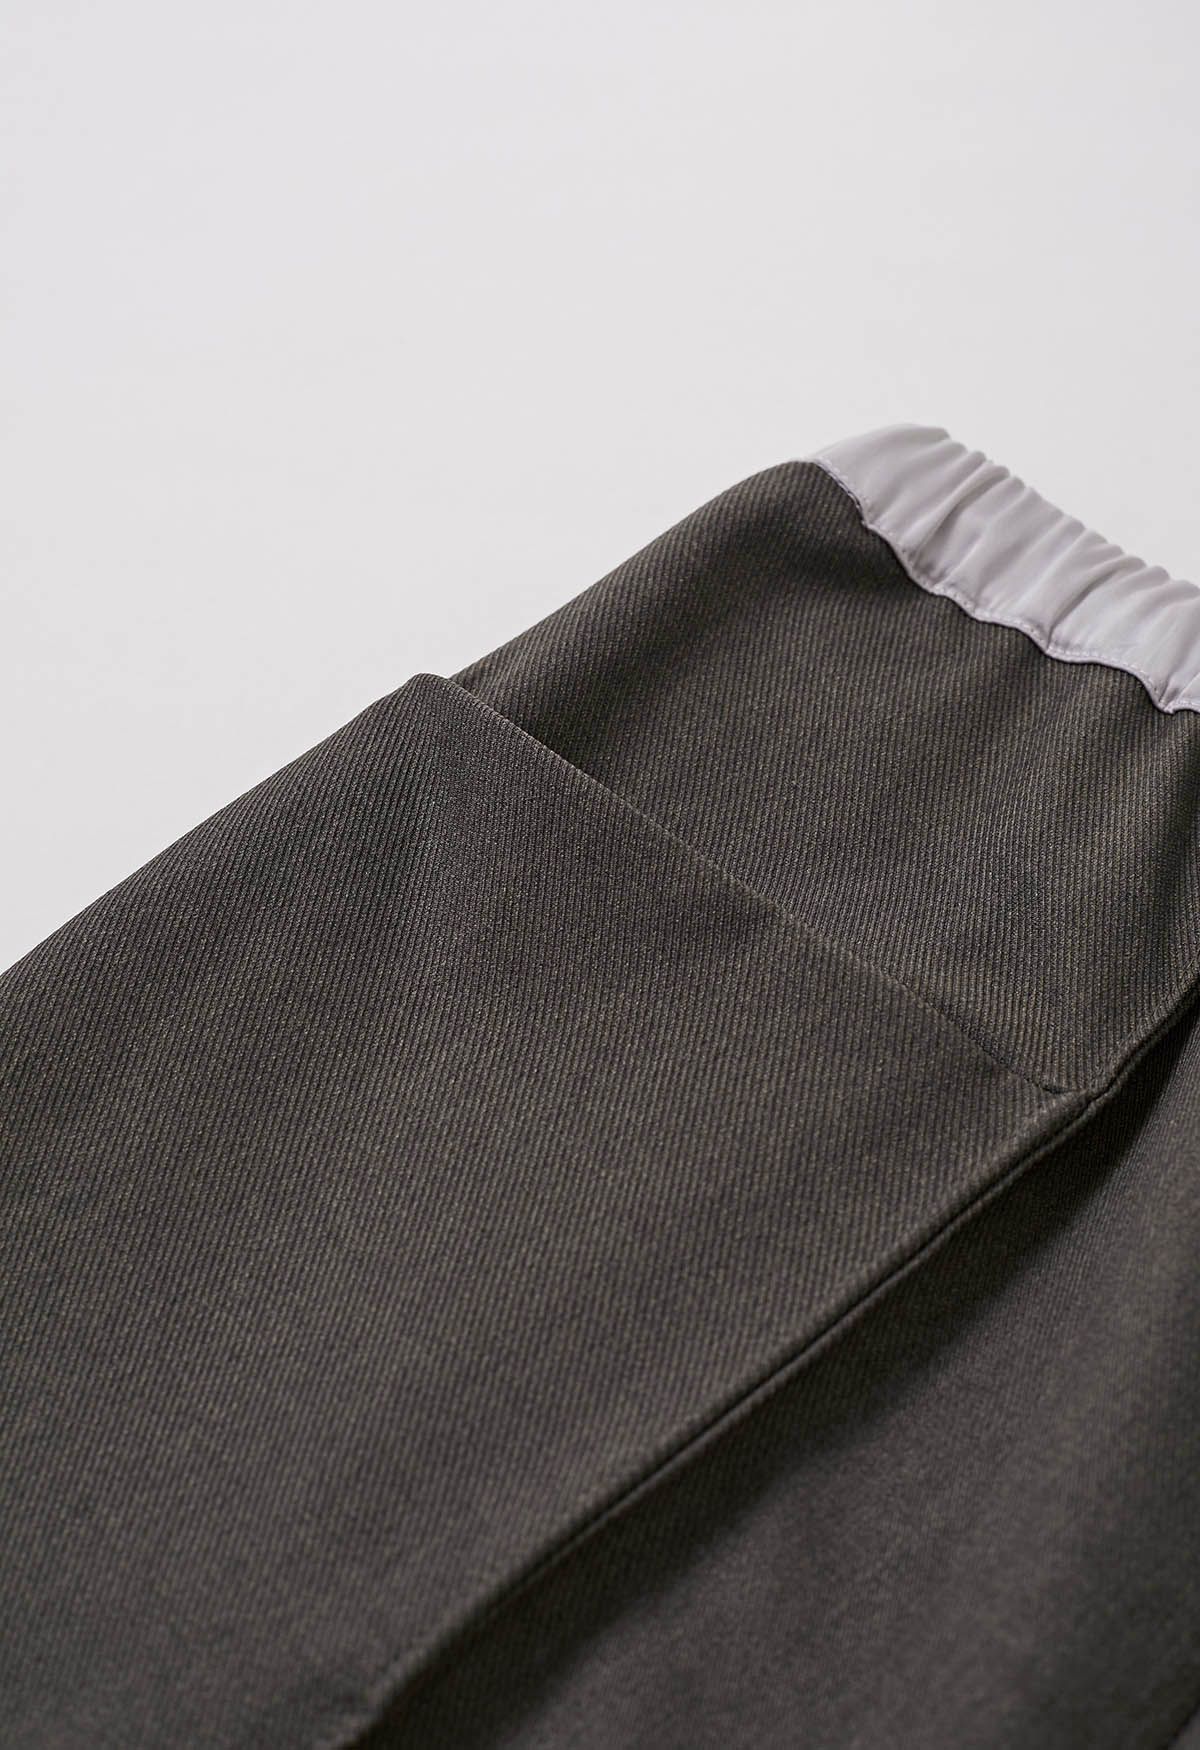 Pantalones rectos con detalle de costura en la cintura en contraste en color topo